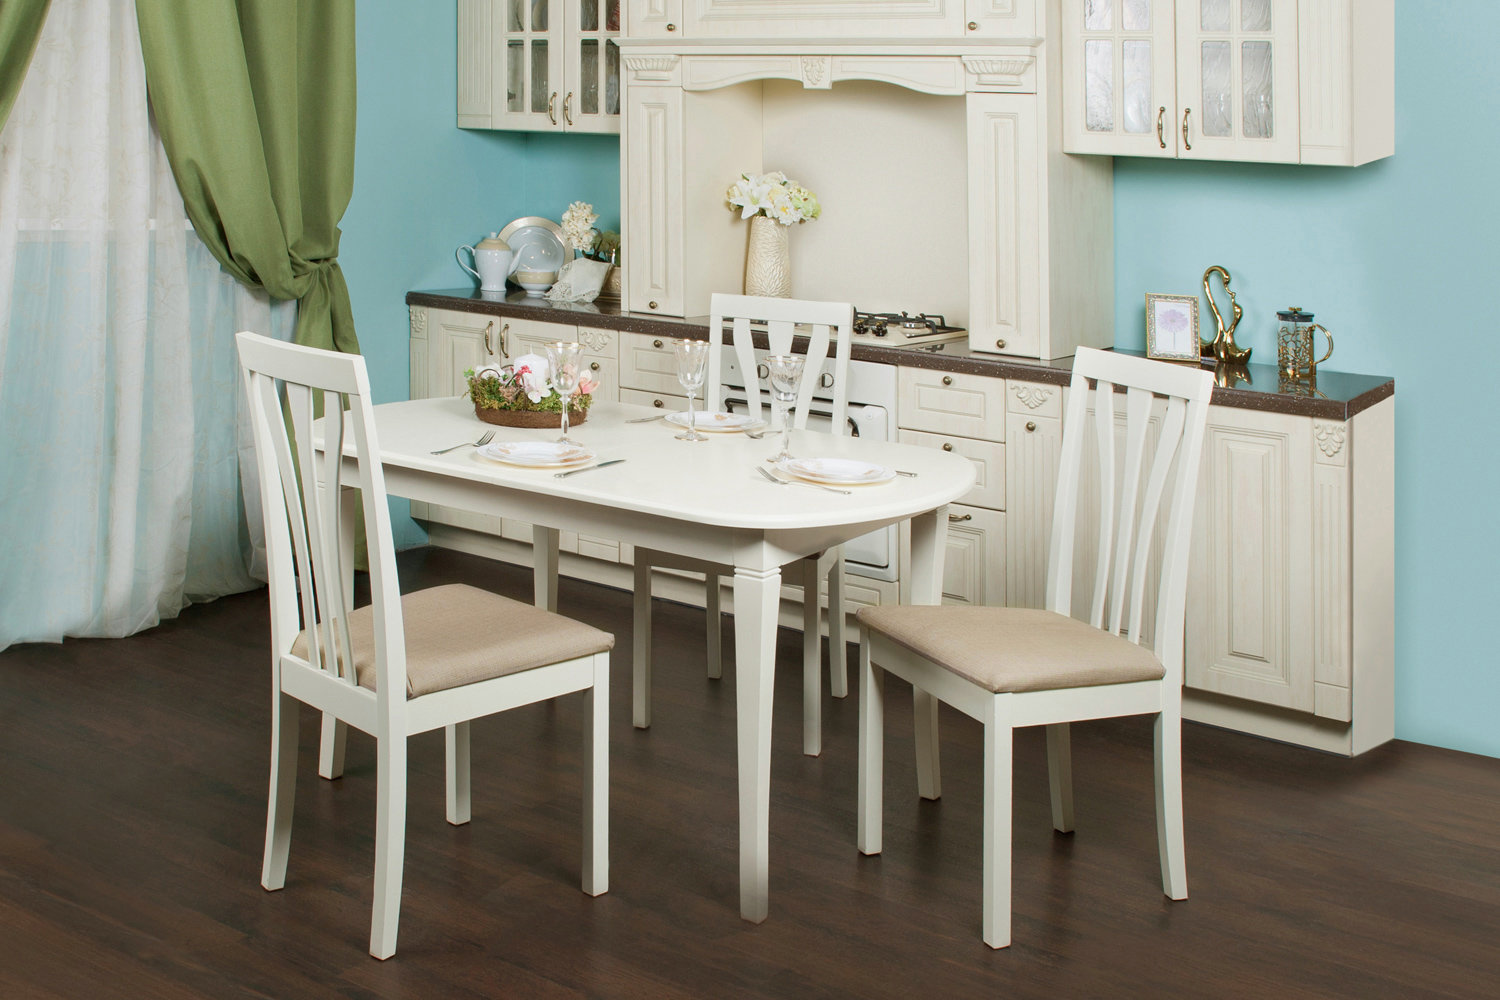 Картинки кухонного стола. Стол хофф белый кухонный. Хофф столы кухонные. Хофф столы и стулья для кухни. Обеденный стол для кухни.